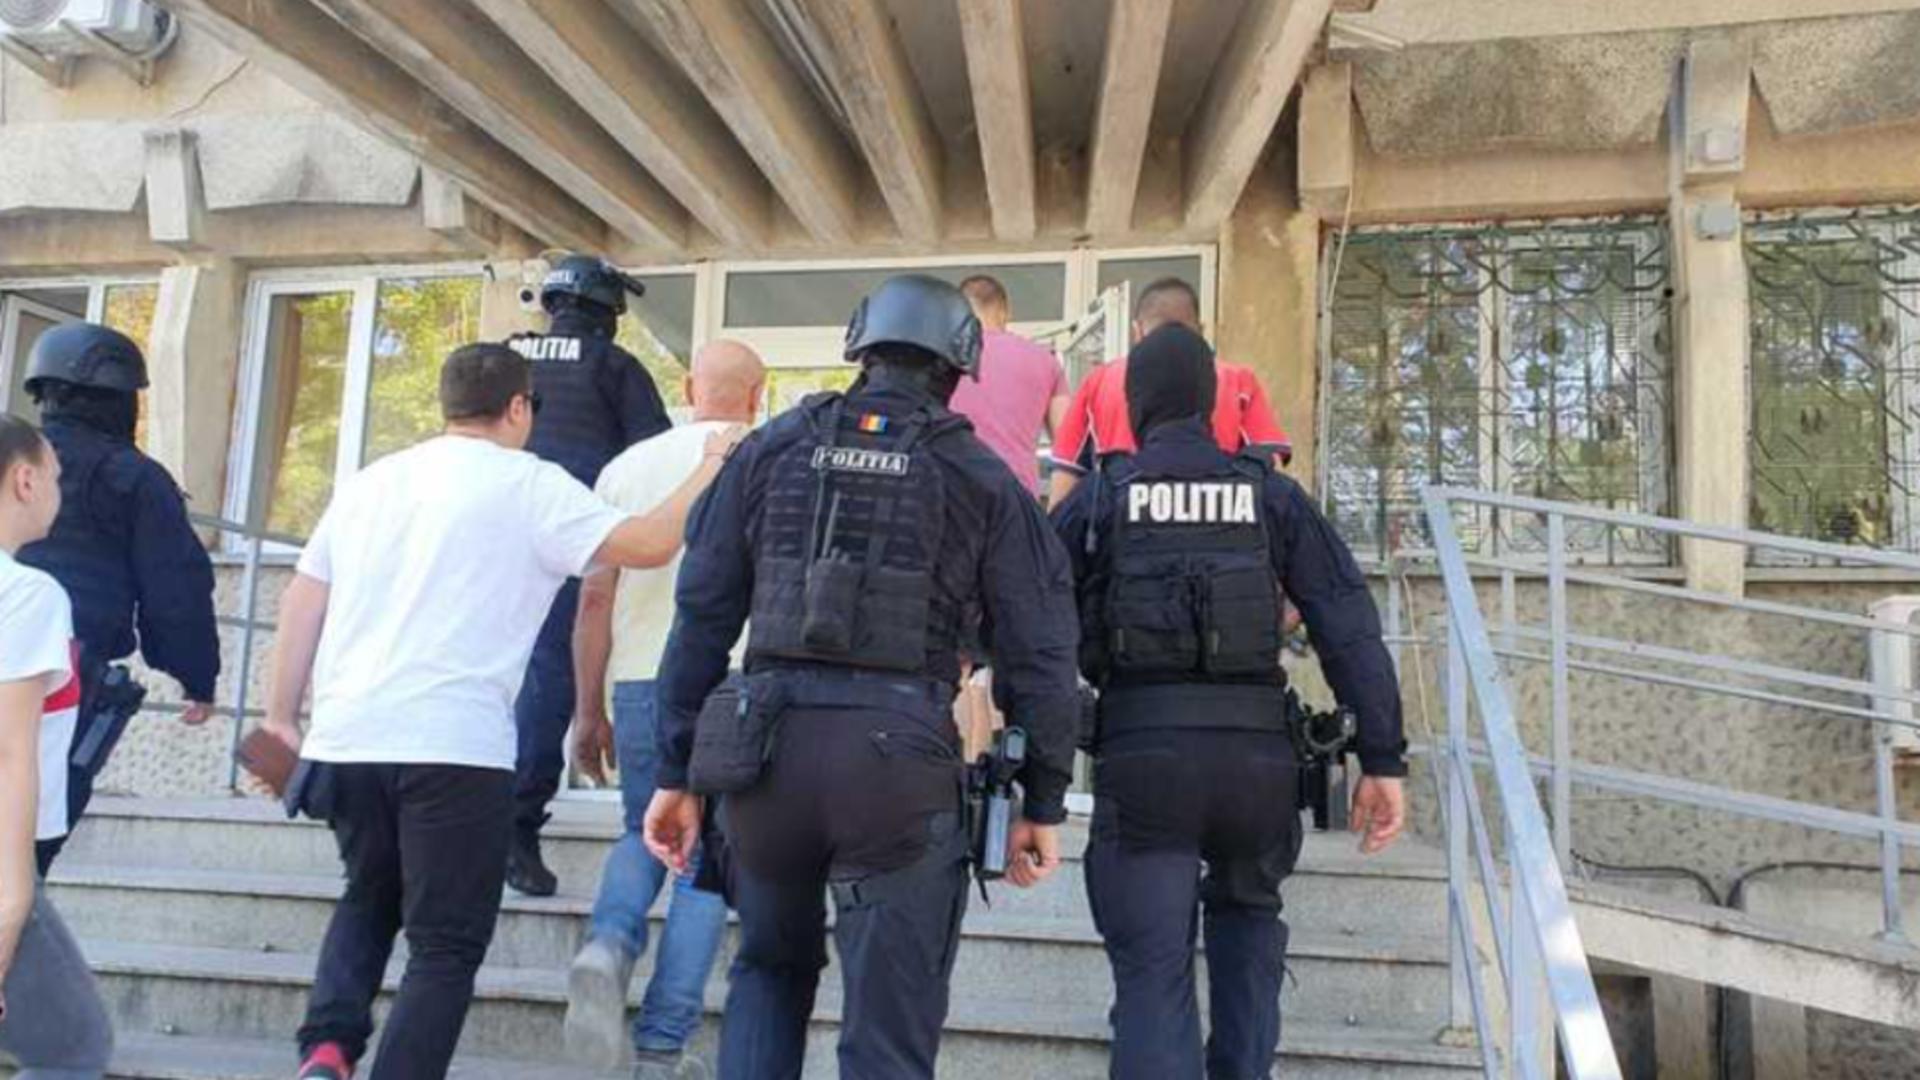 Bărbaţi, reţinuţi după ce au provocat un scandal monstru în faţa unui local din Botoșani: 3 persoane, agresate